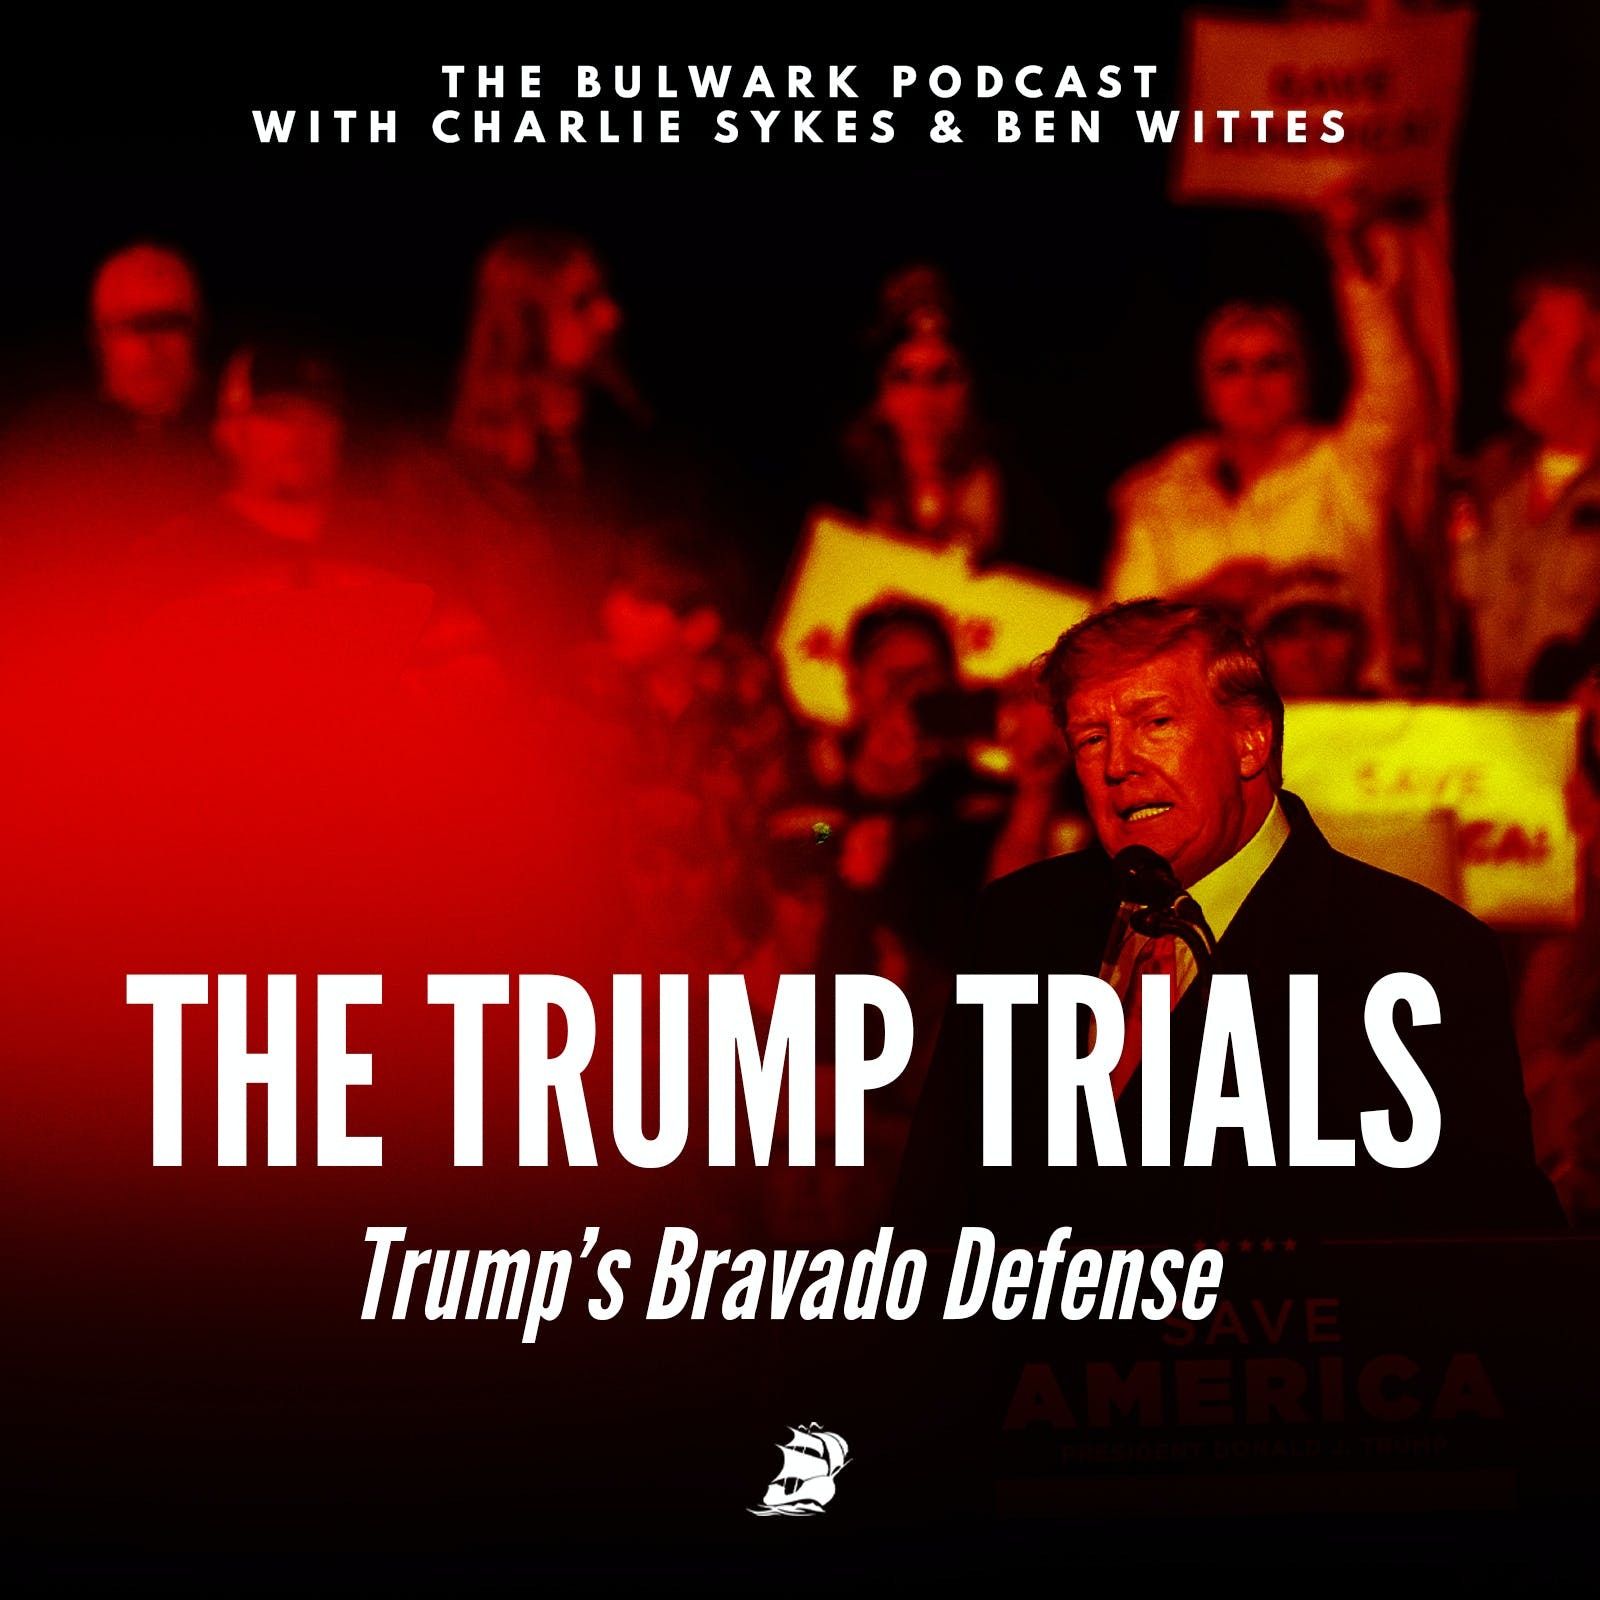 Trump’s Bravado Defense by The Bulwark Podcast